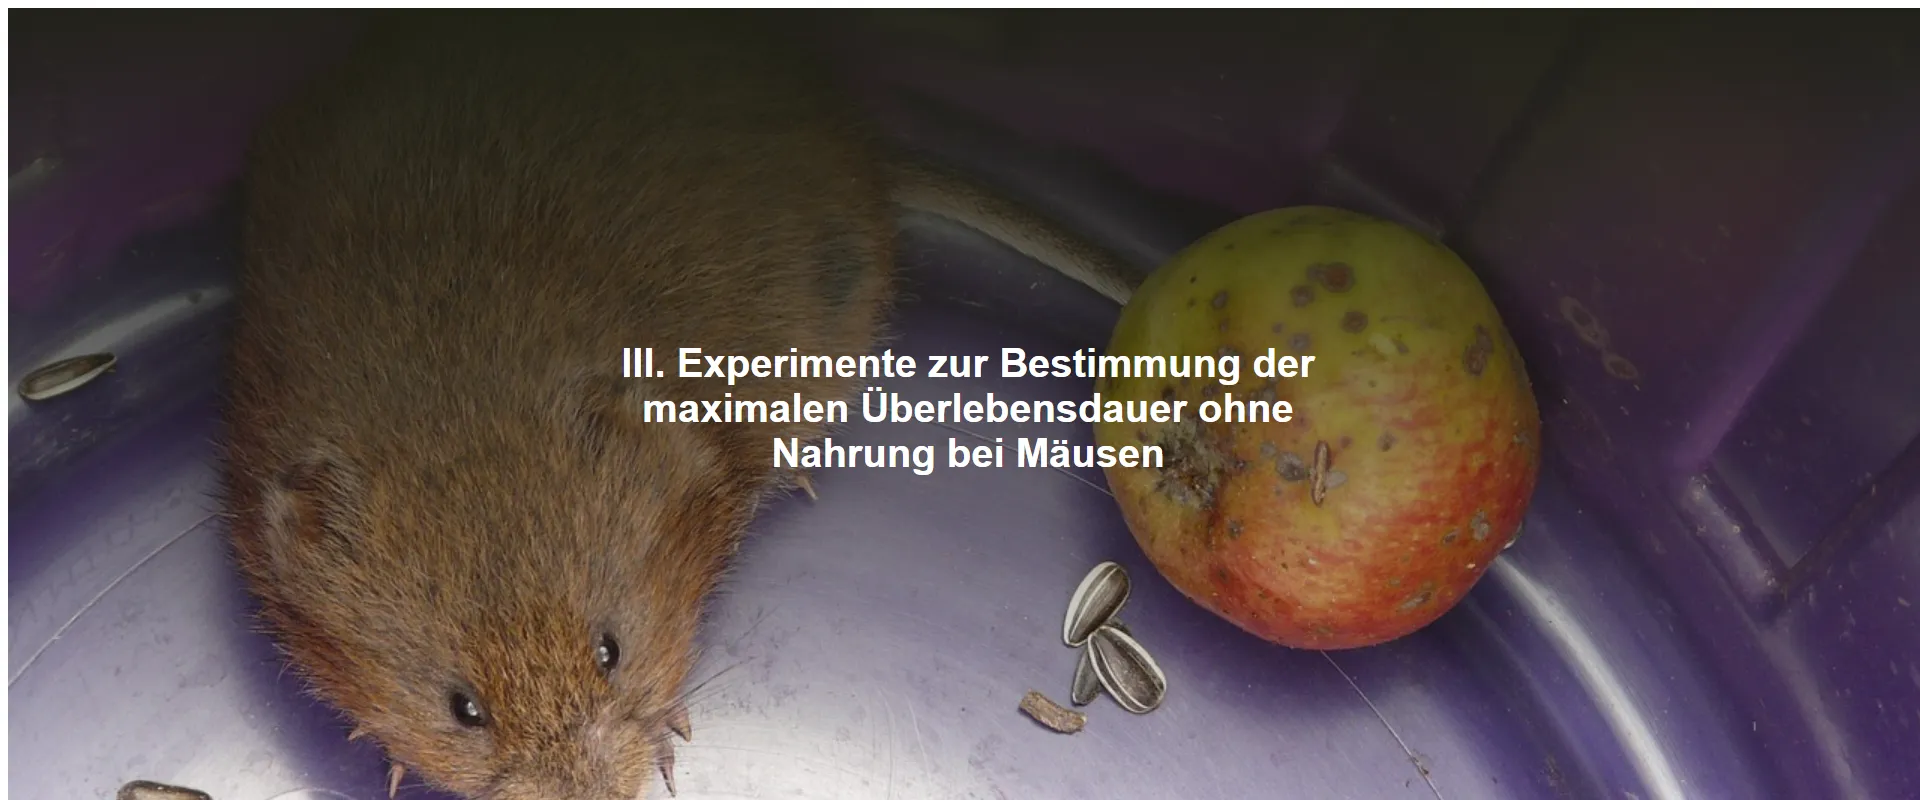 Experimente zur Bestimmung der maximalen Überlebensdauer ohne Nahrung bei Mäusen